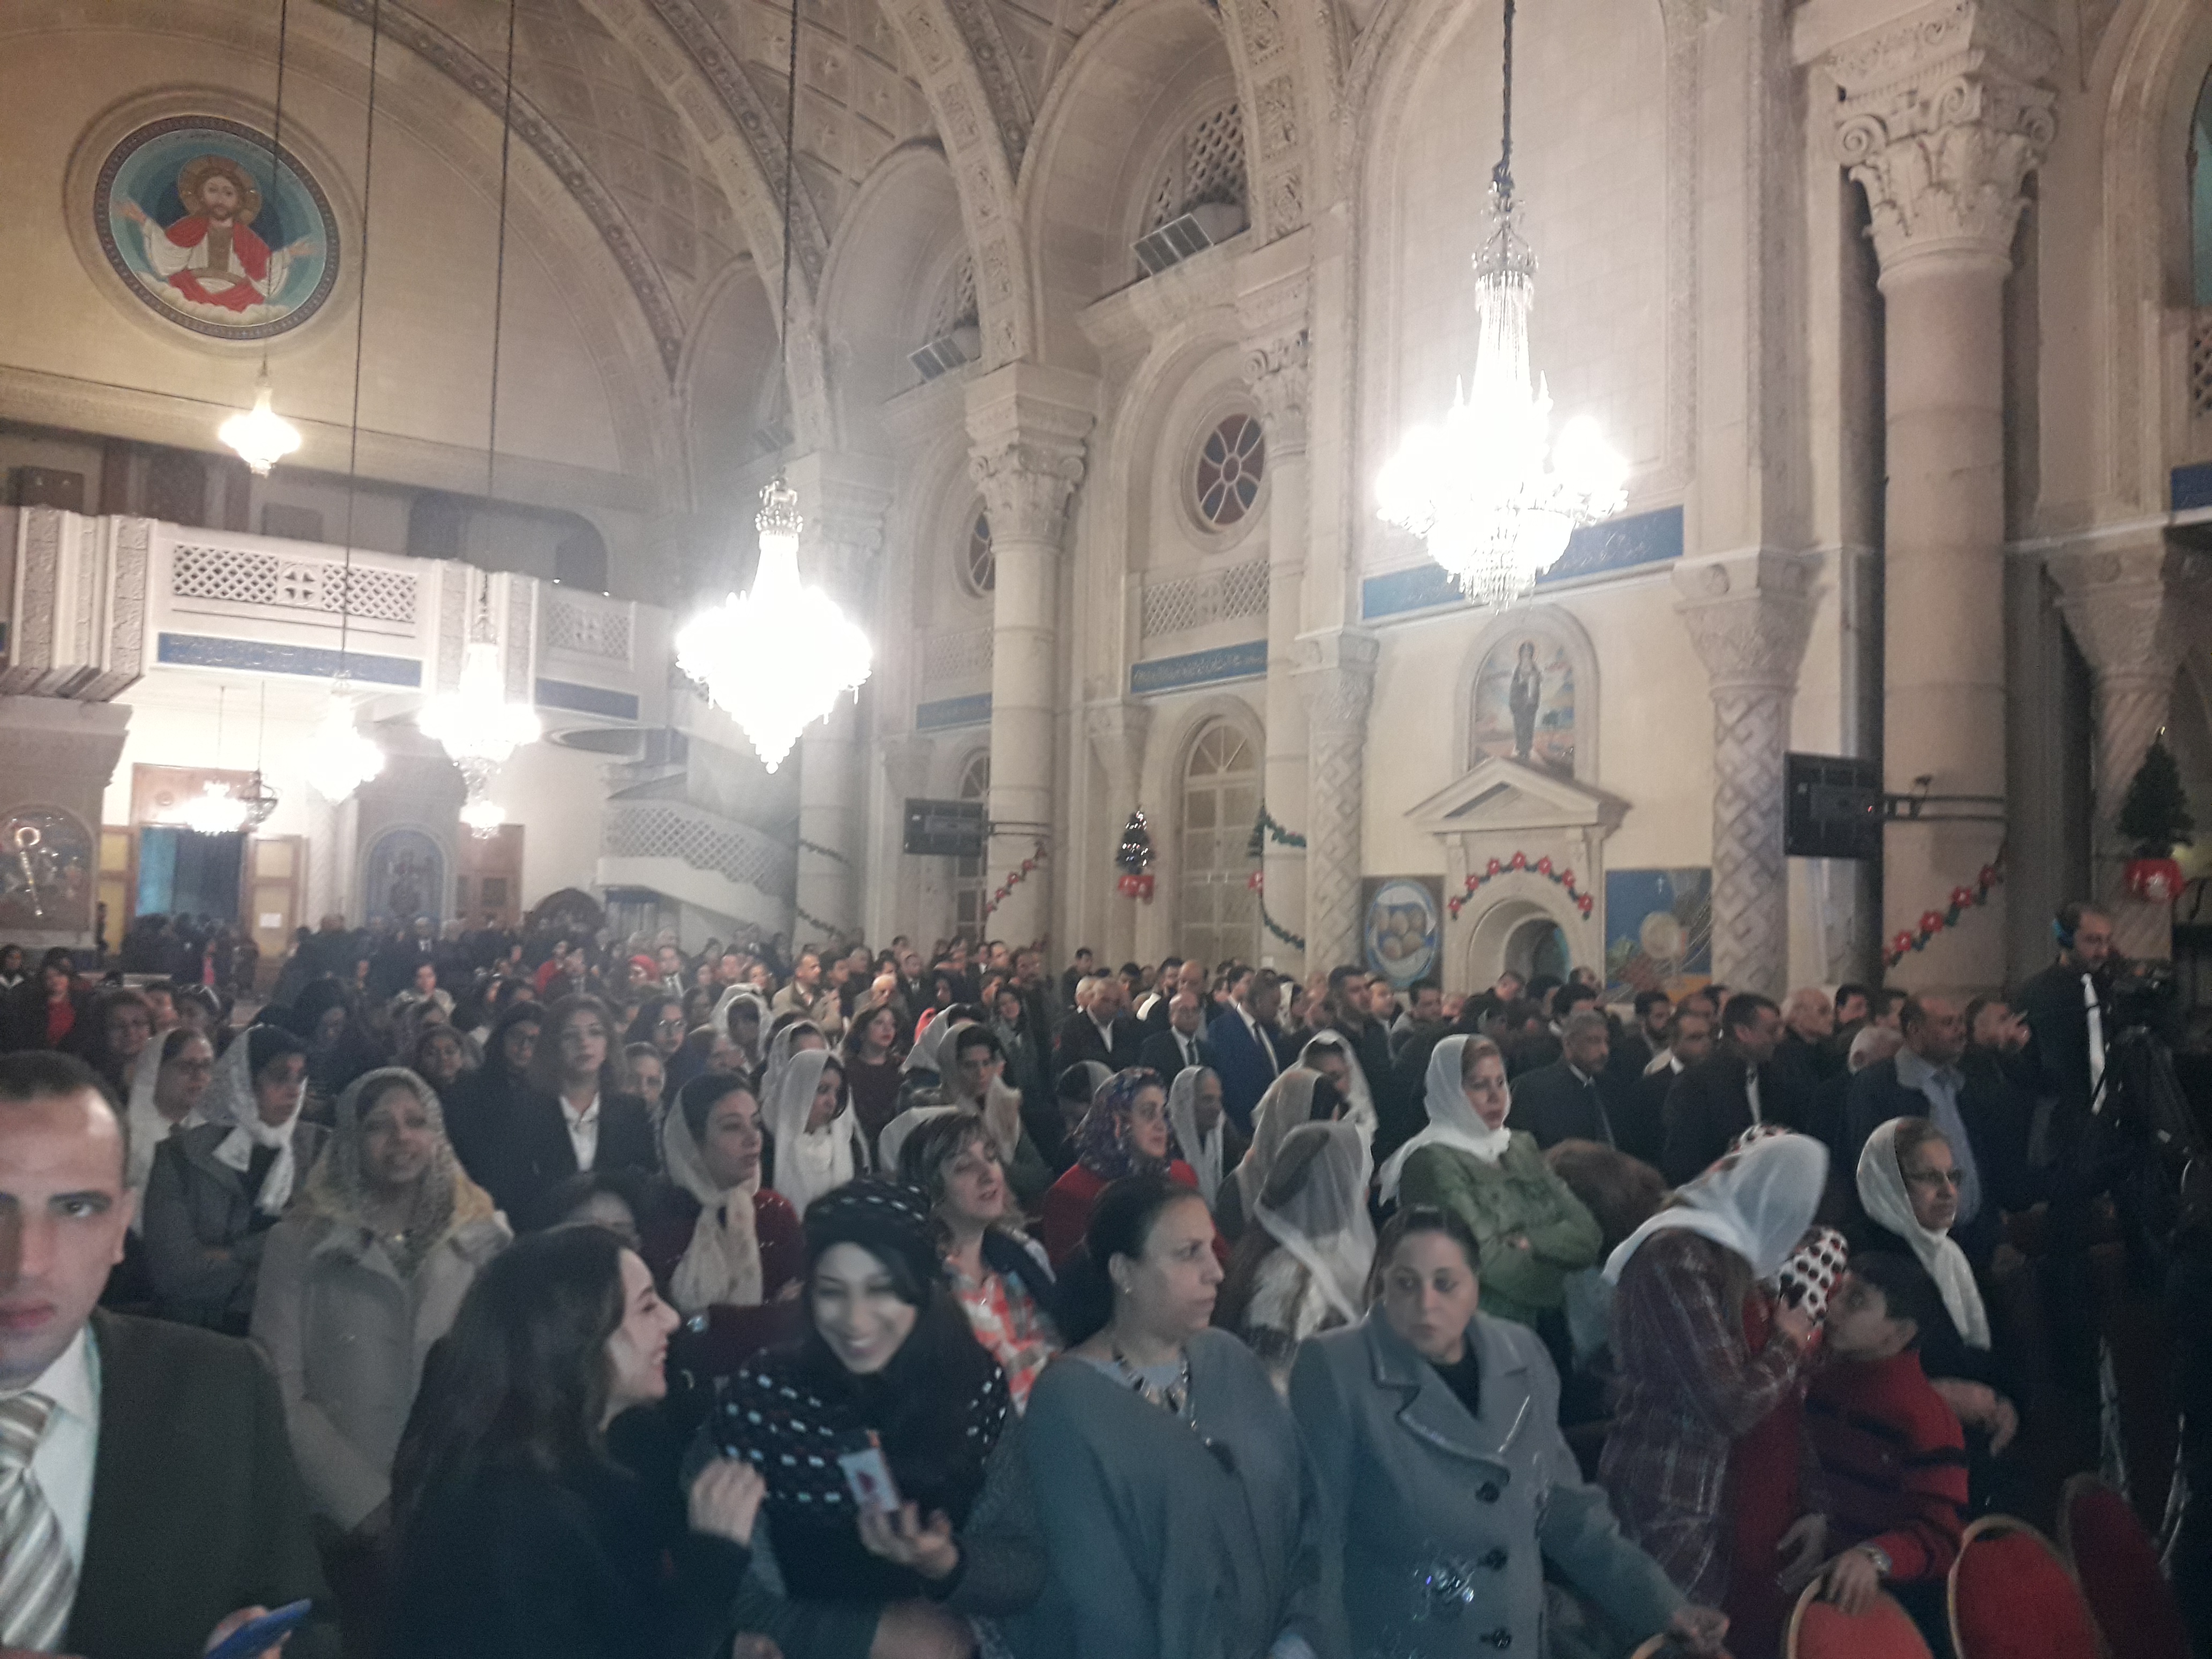  قداس عيد الميلاد بالكنيسة المرقسية بالإسكندرية (1)